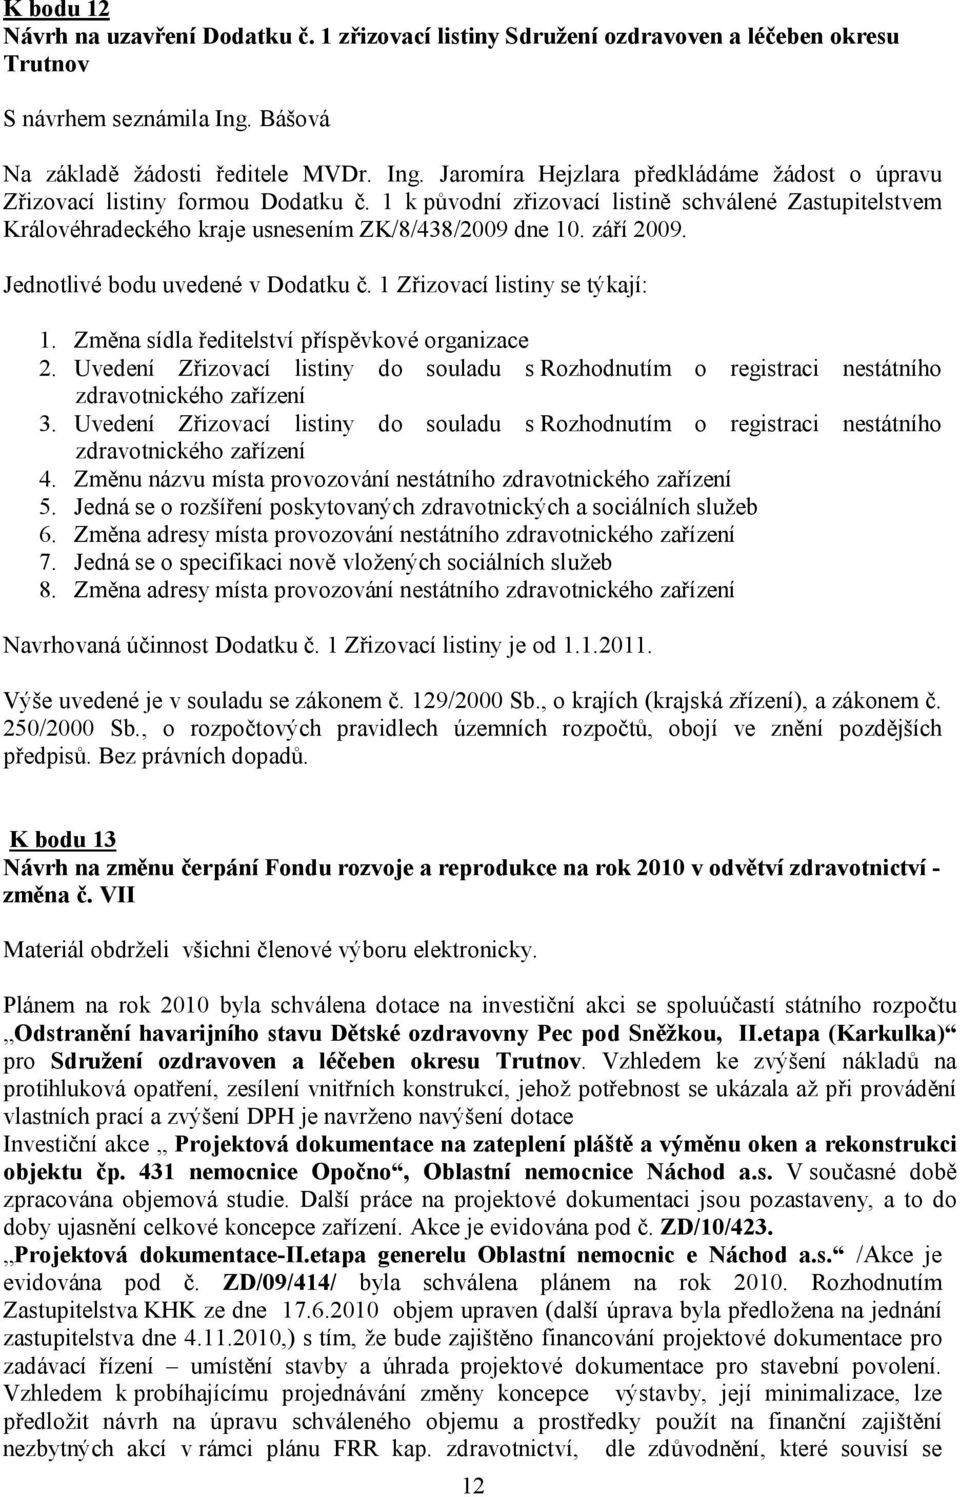 1 k původní zřizovací listině schválené Zastupitelstvem Královéhradeckého kraje usnesením ZK/8/438/2009 dne 10. září 2009. Jednotlivé bodu uvedené v Dodatku č. 1 Zřizovací listiny se týkají: 1.